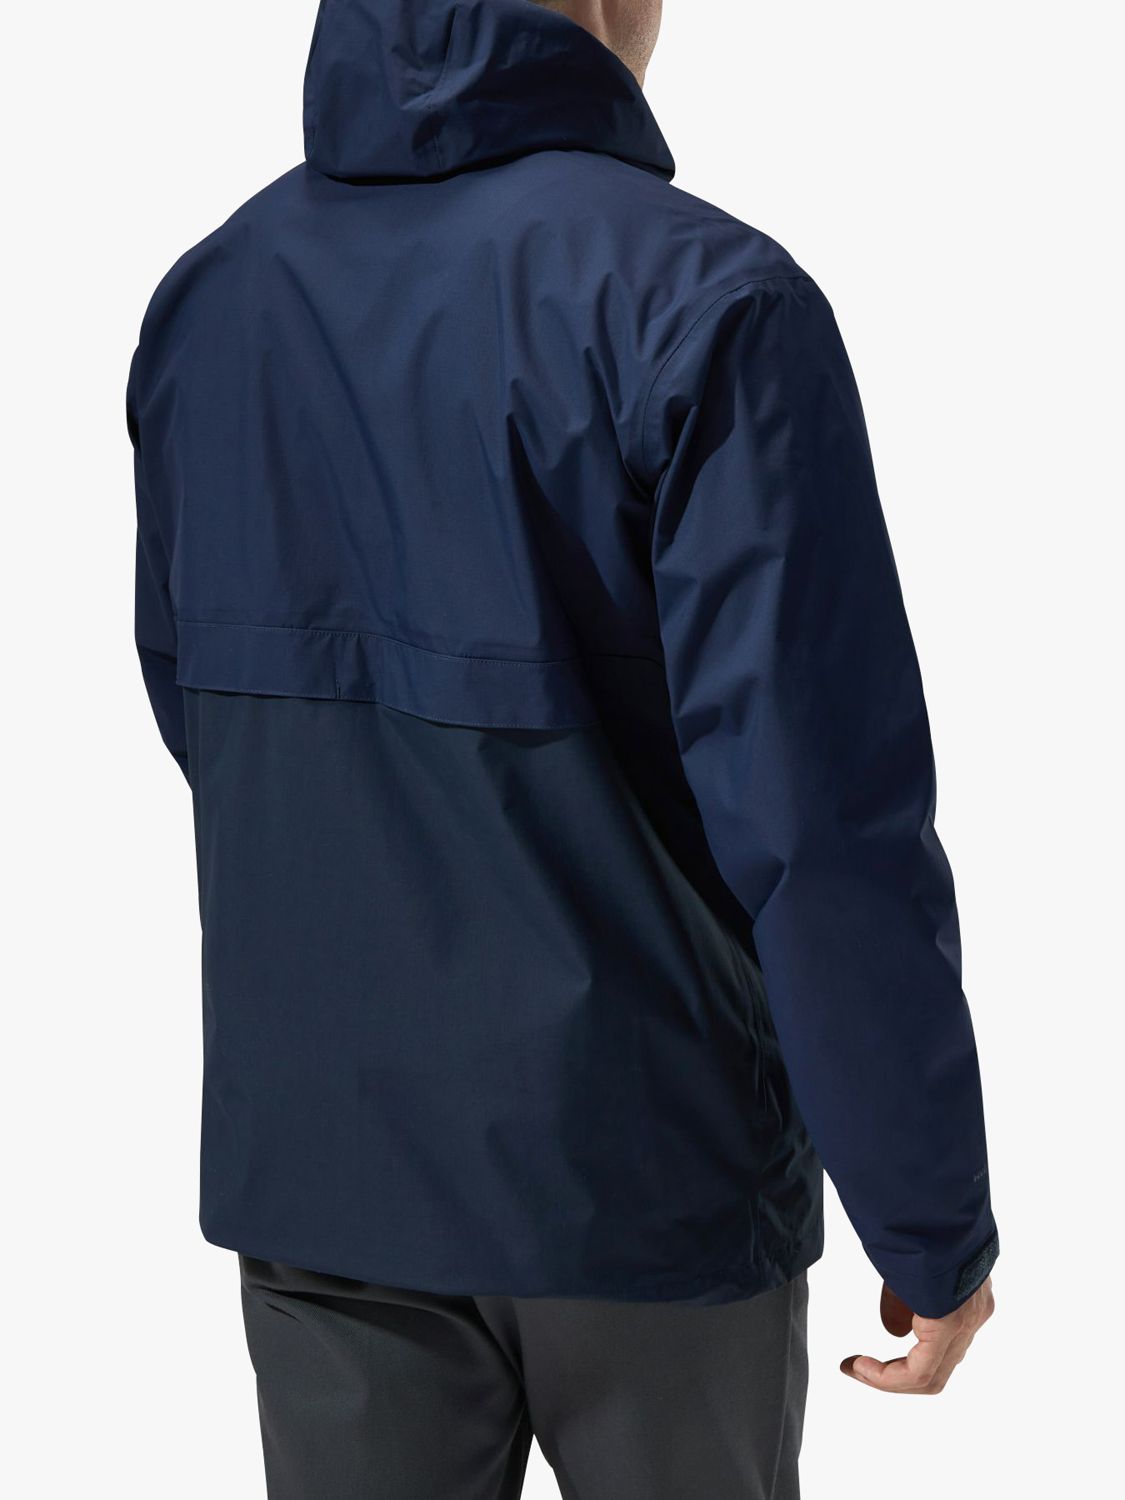 Berghaus Helmor Utility Men's Waterproof Jacket